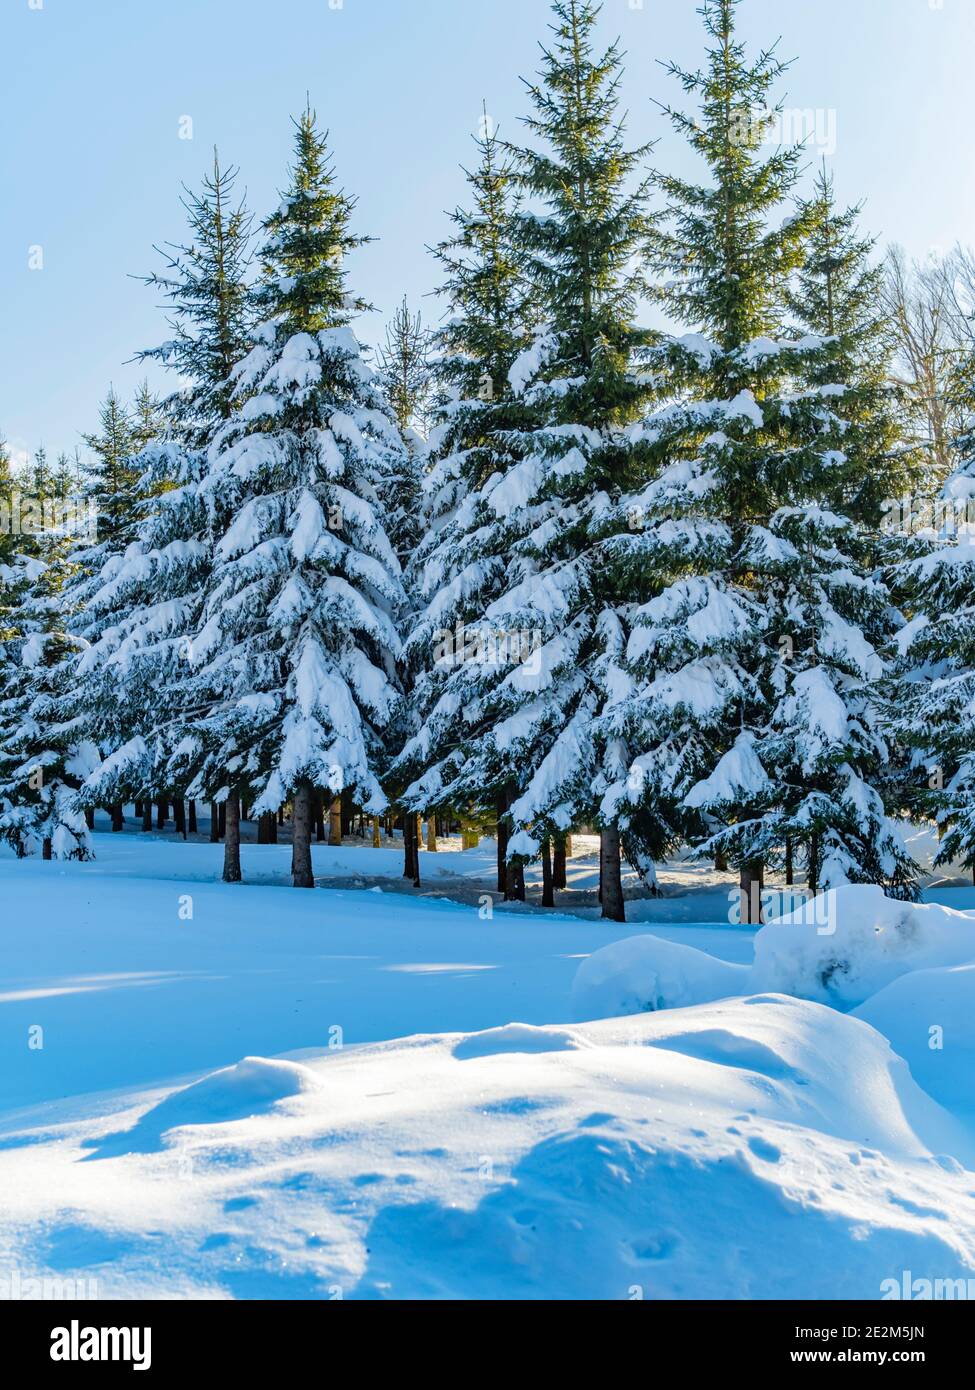 Árboles de picea en invierno bajo vegetación de nieve perenne Foto de stock